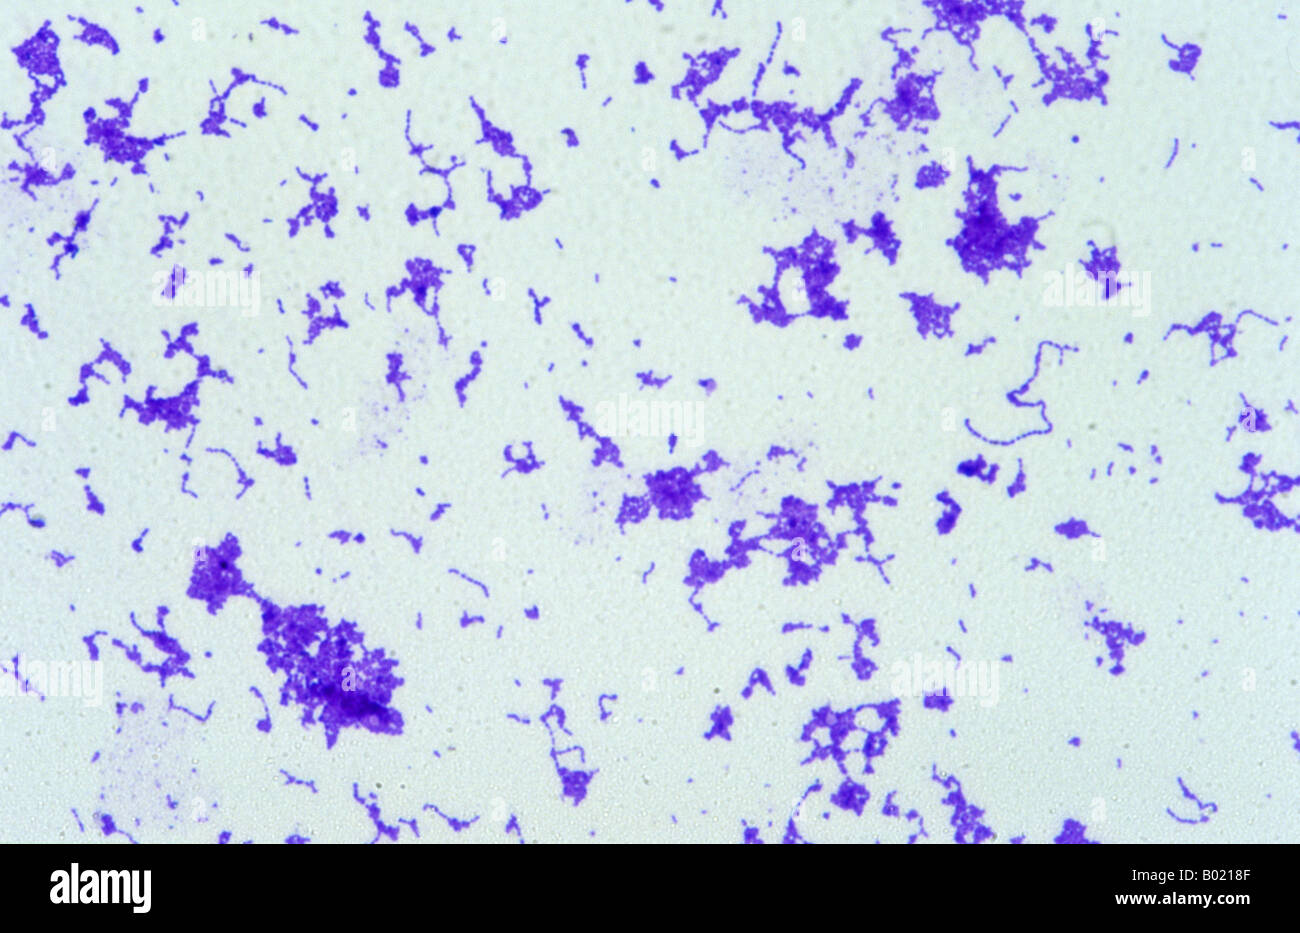 Streptococcus pyogenes bacterium Stock Photo - Alamy